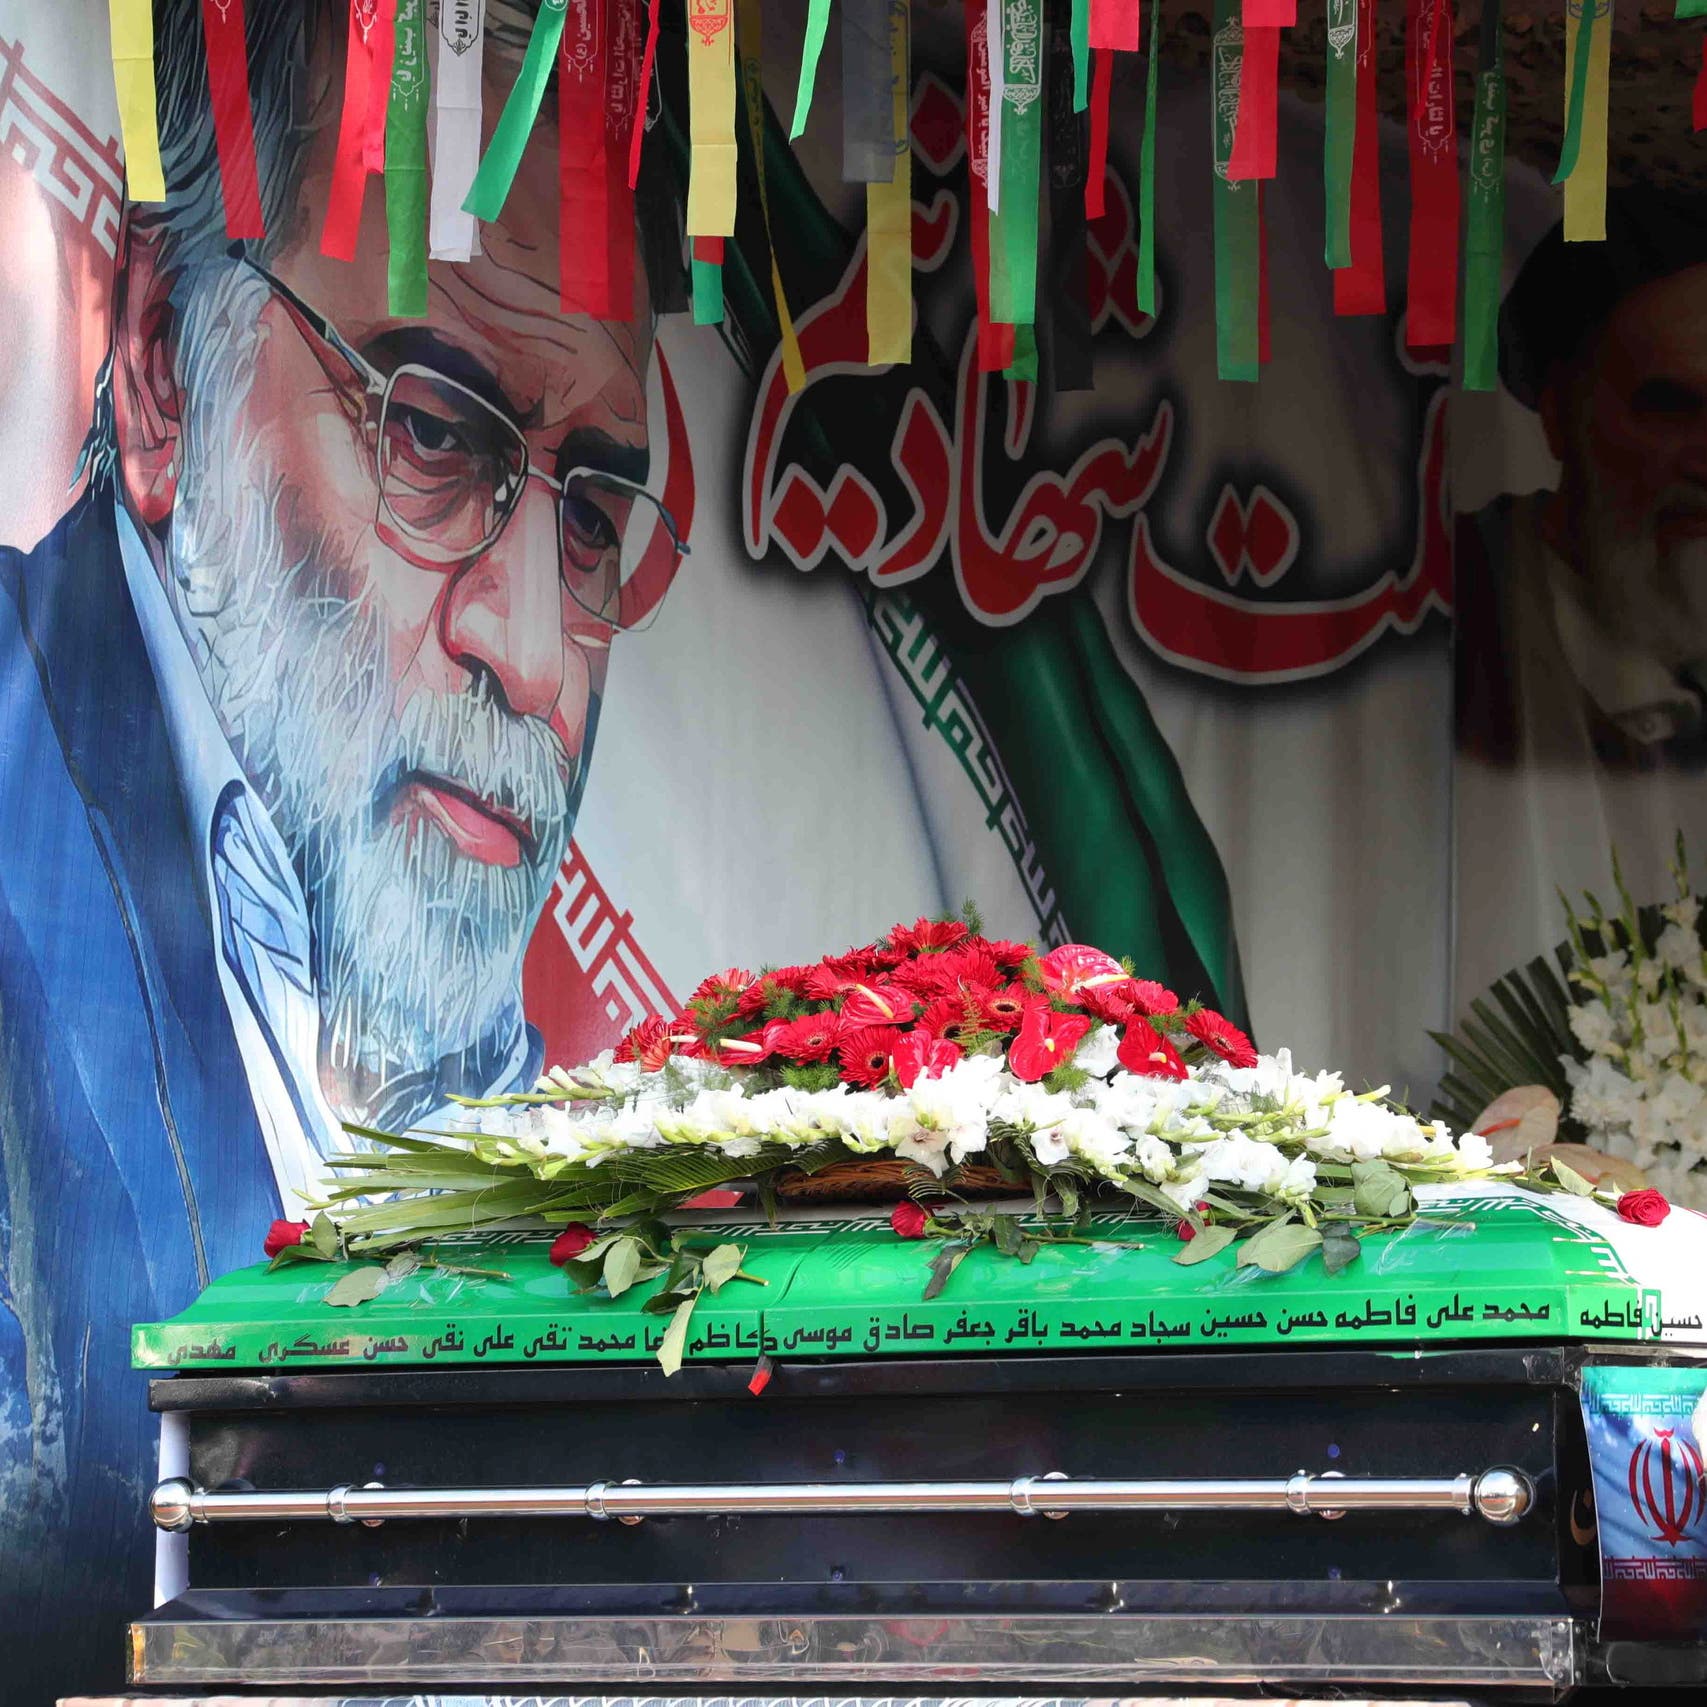 إيران: اغتيال فخري زاده تم بعملية معقدة وأسلوب جديد بالكامل